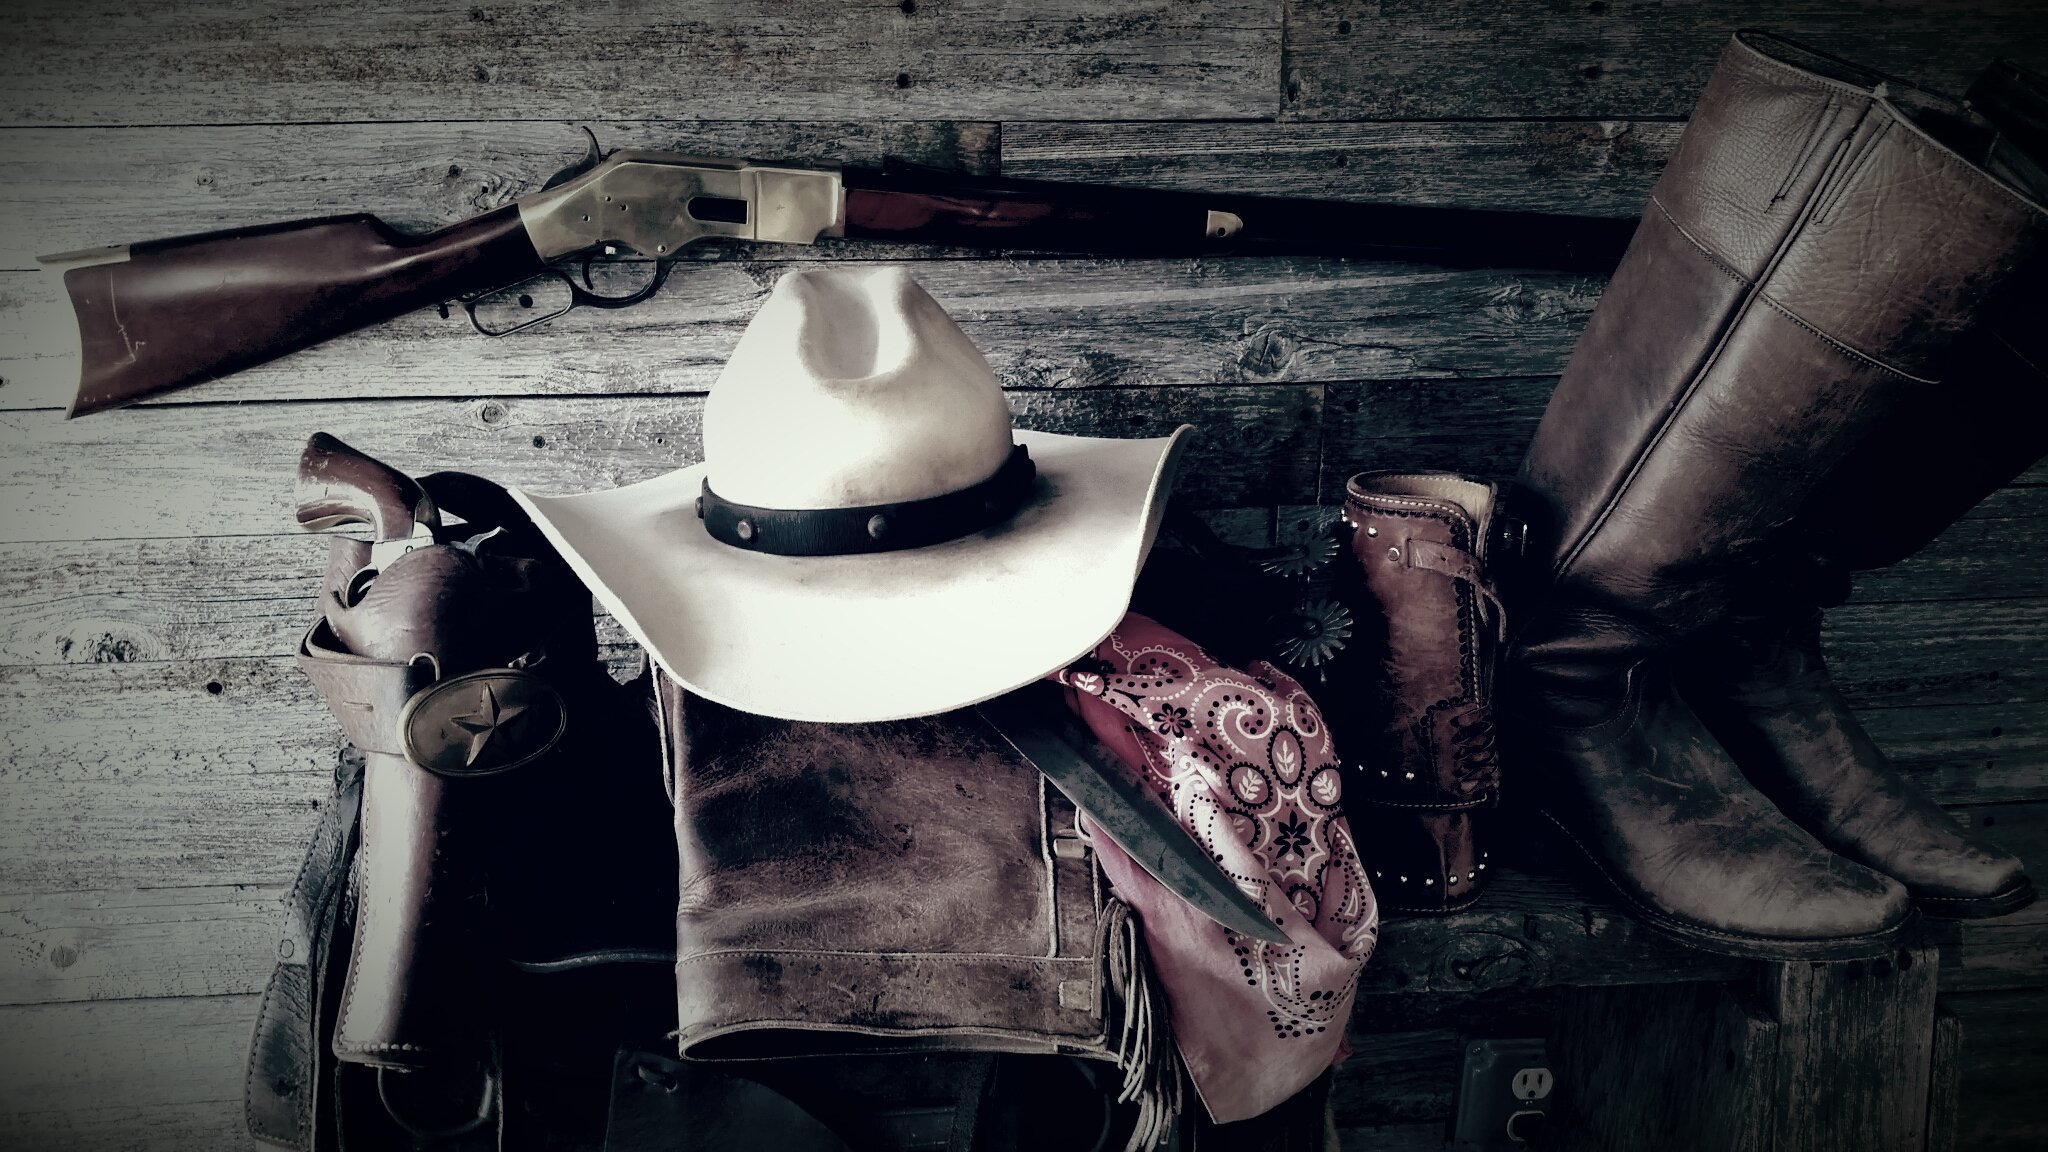 Позвонить ковбою. Ковбойская шляпа дача РДР 2. Стетсон шляпа Дикова Запад. Дикий Запад Техас Салун. Стиль дикого Запада рдр2.